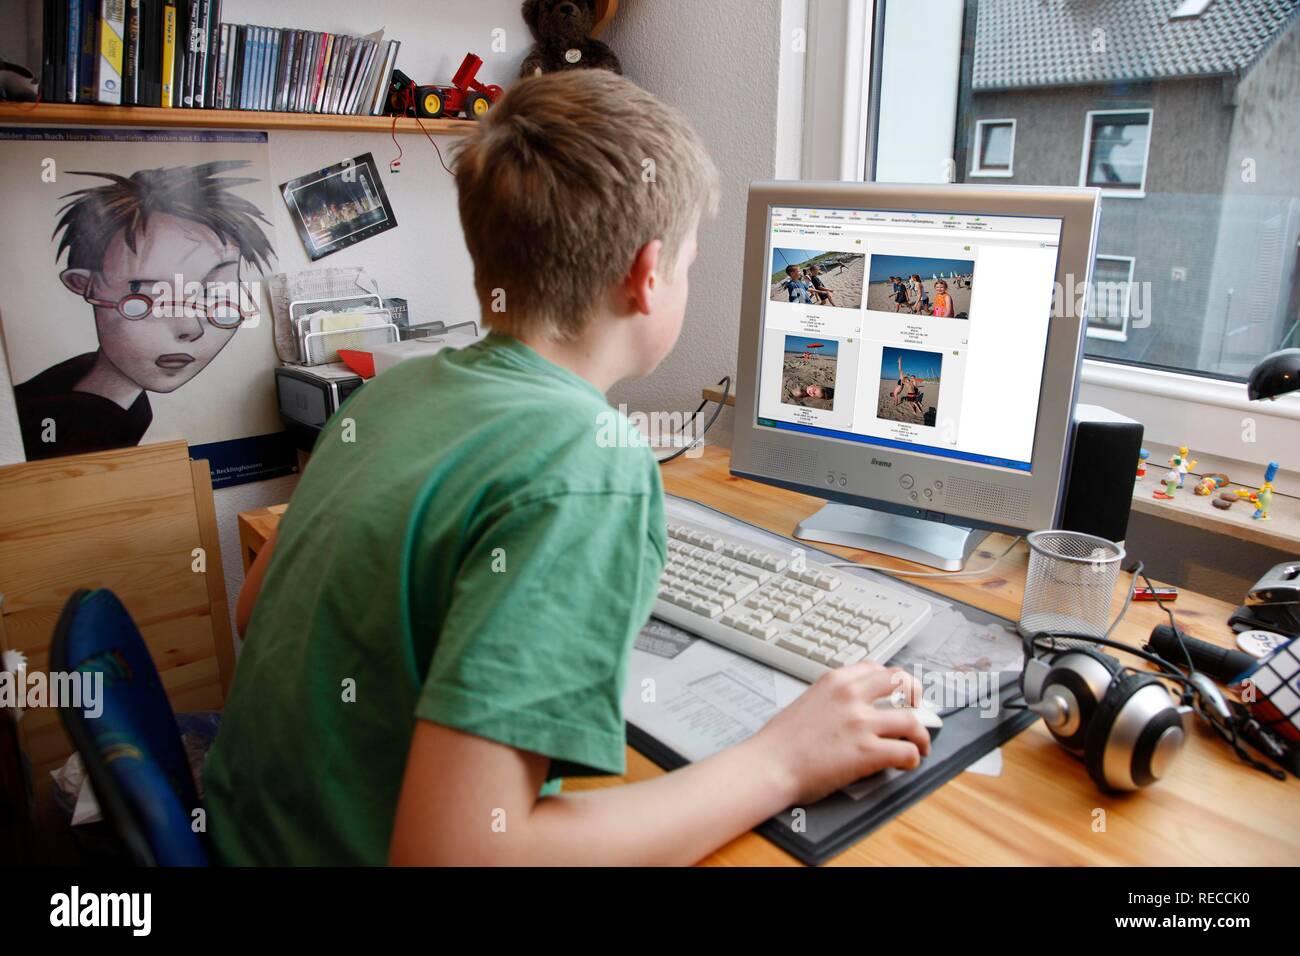 Junge, 13, mit seinem Computer zu Hause arbeiten, anzeigen Urlaub Fotos in einem Bildbearbeitungsprogramm Stockfoto